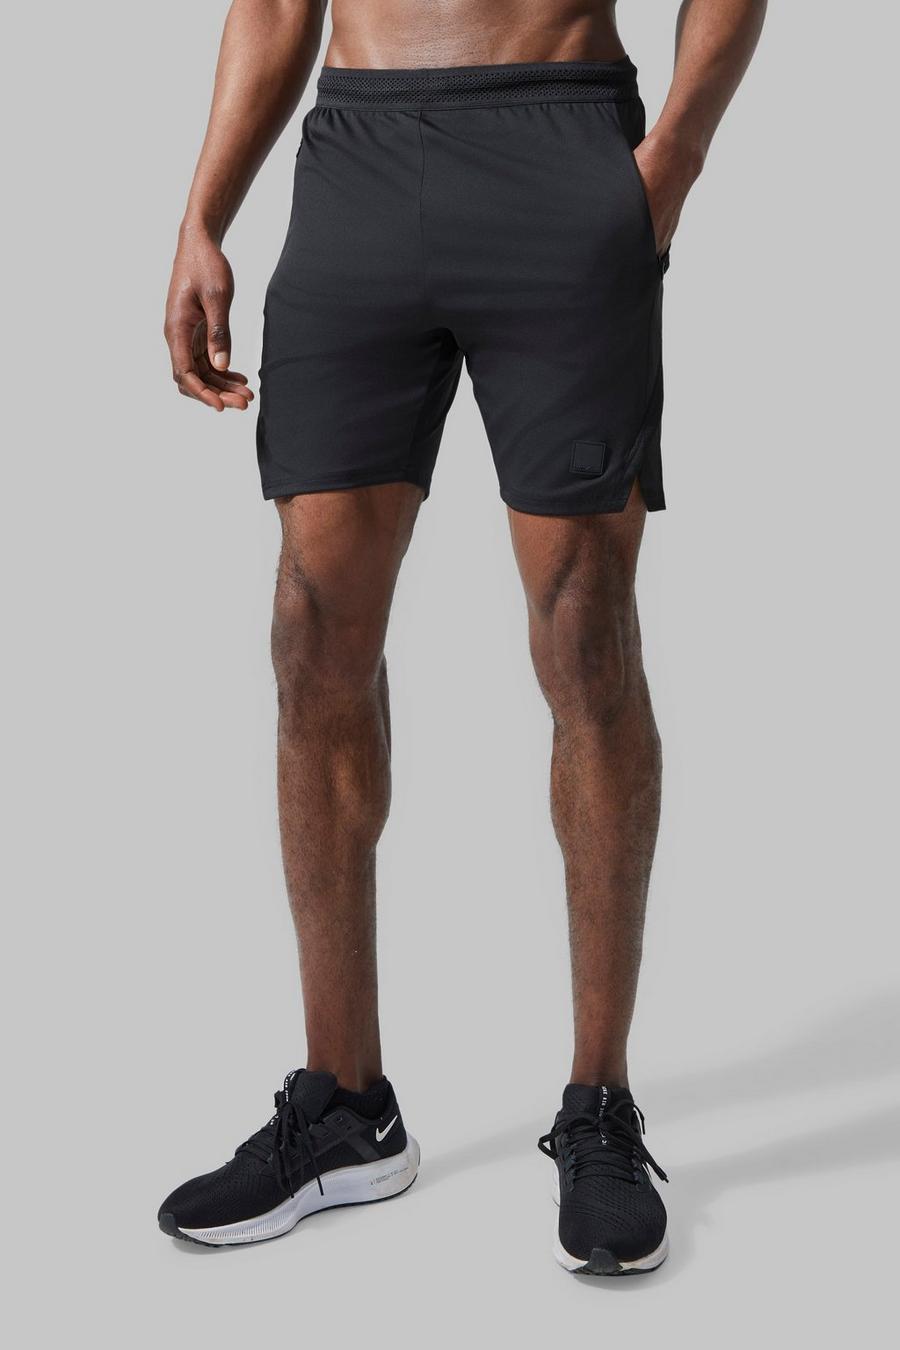 Pantalón corto MAN Active resistente con abertura en el bajo, Black negro